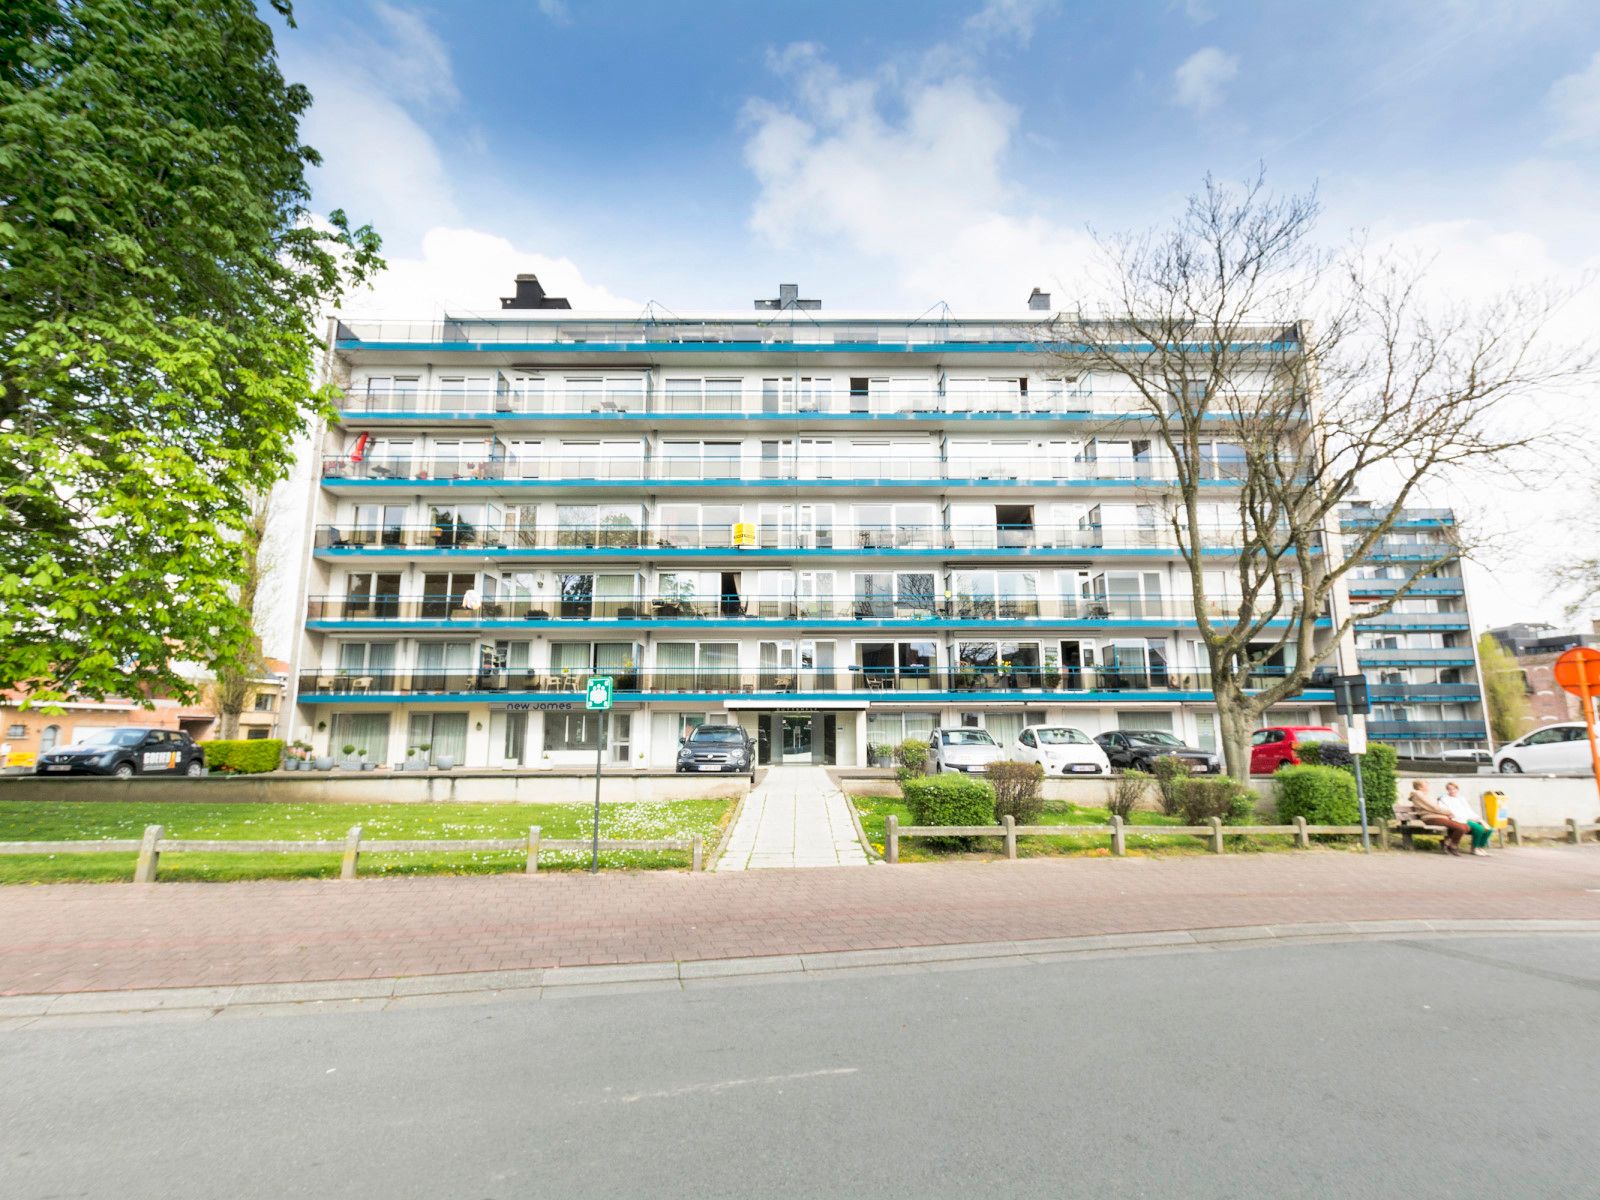 Appartement te koop Mollestraat 8/50 - 1730 Asse